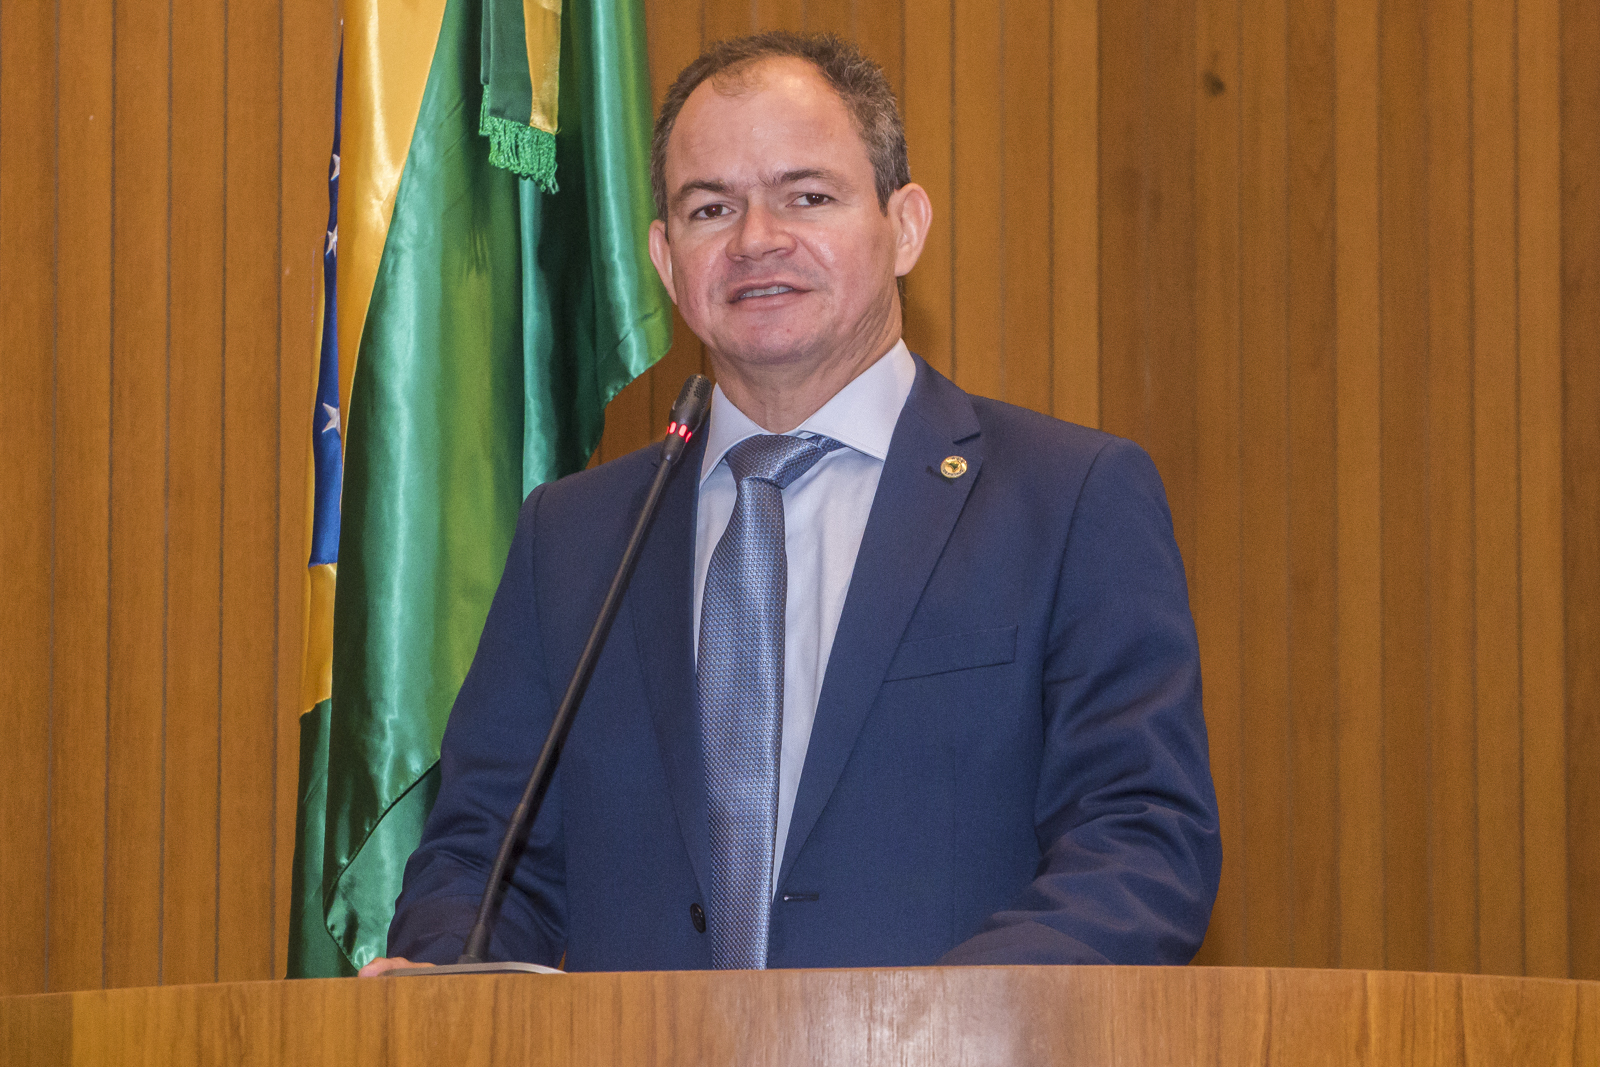 Rafael Leitoa convida para inauguração de trecho da MA-034, em Parnarama